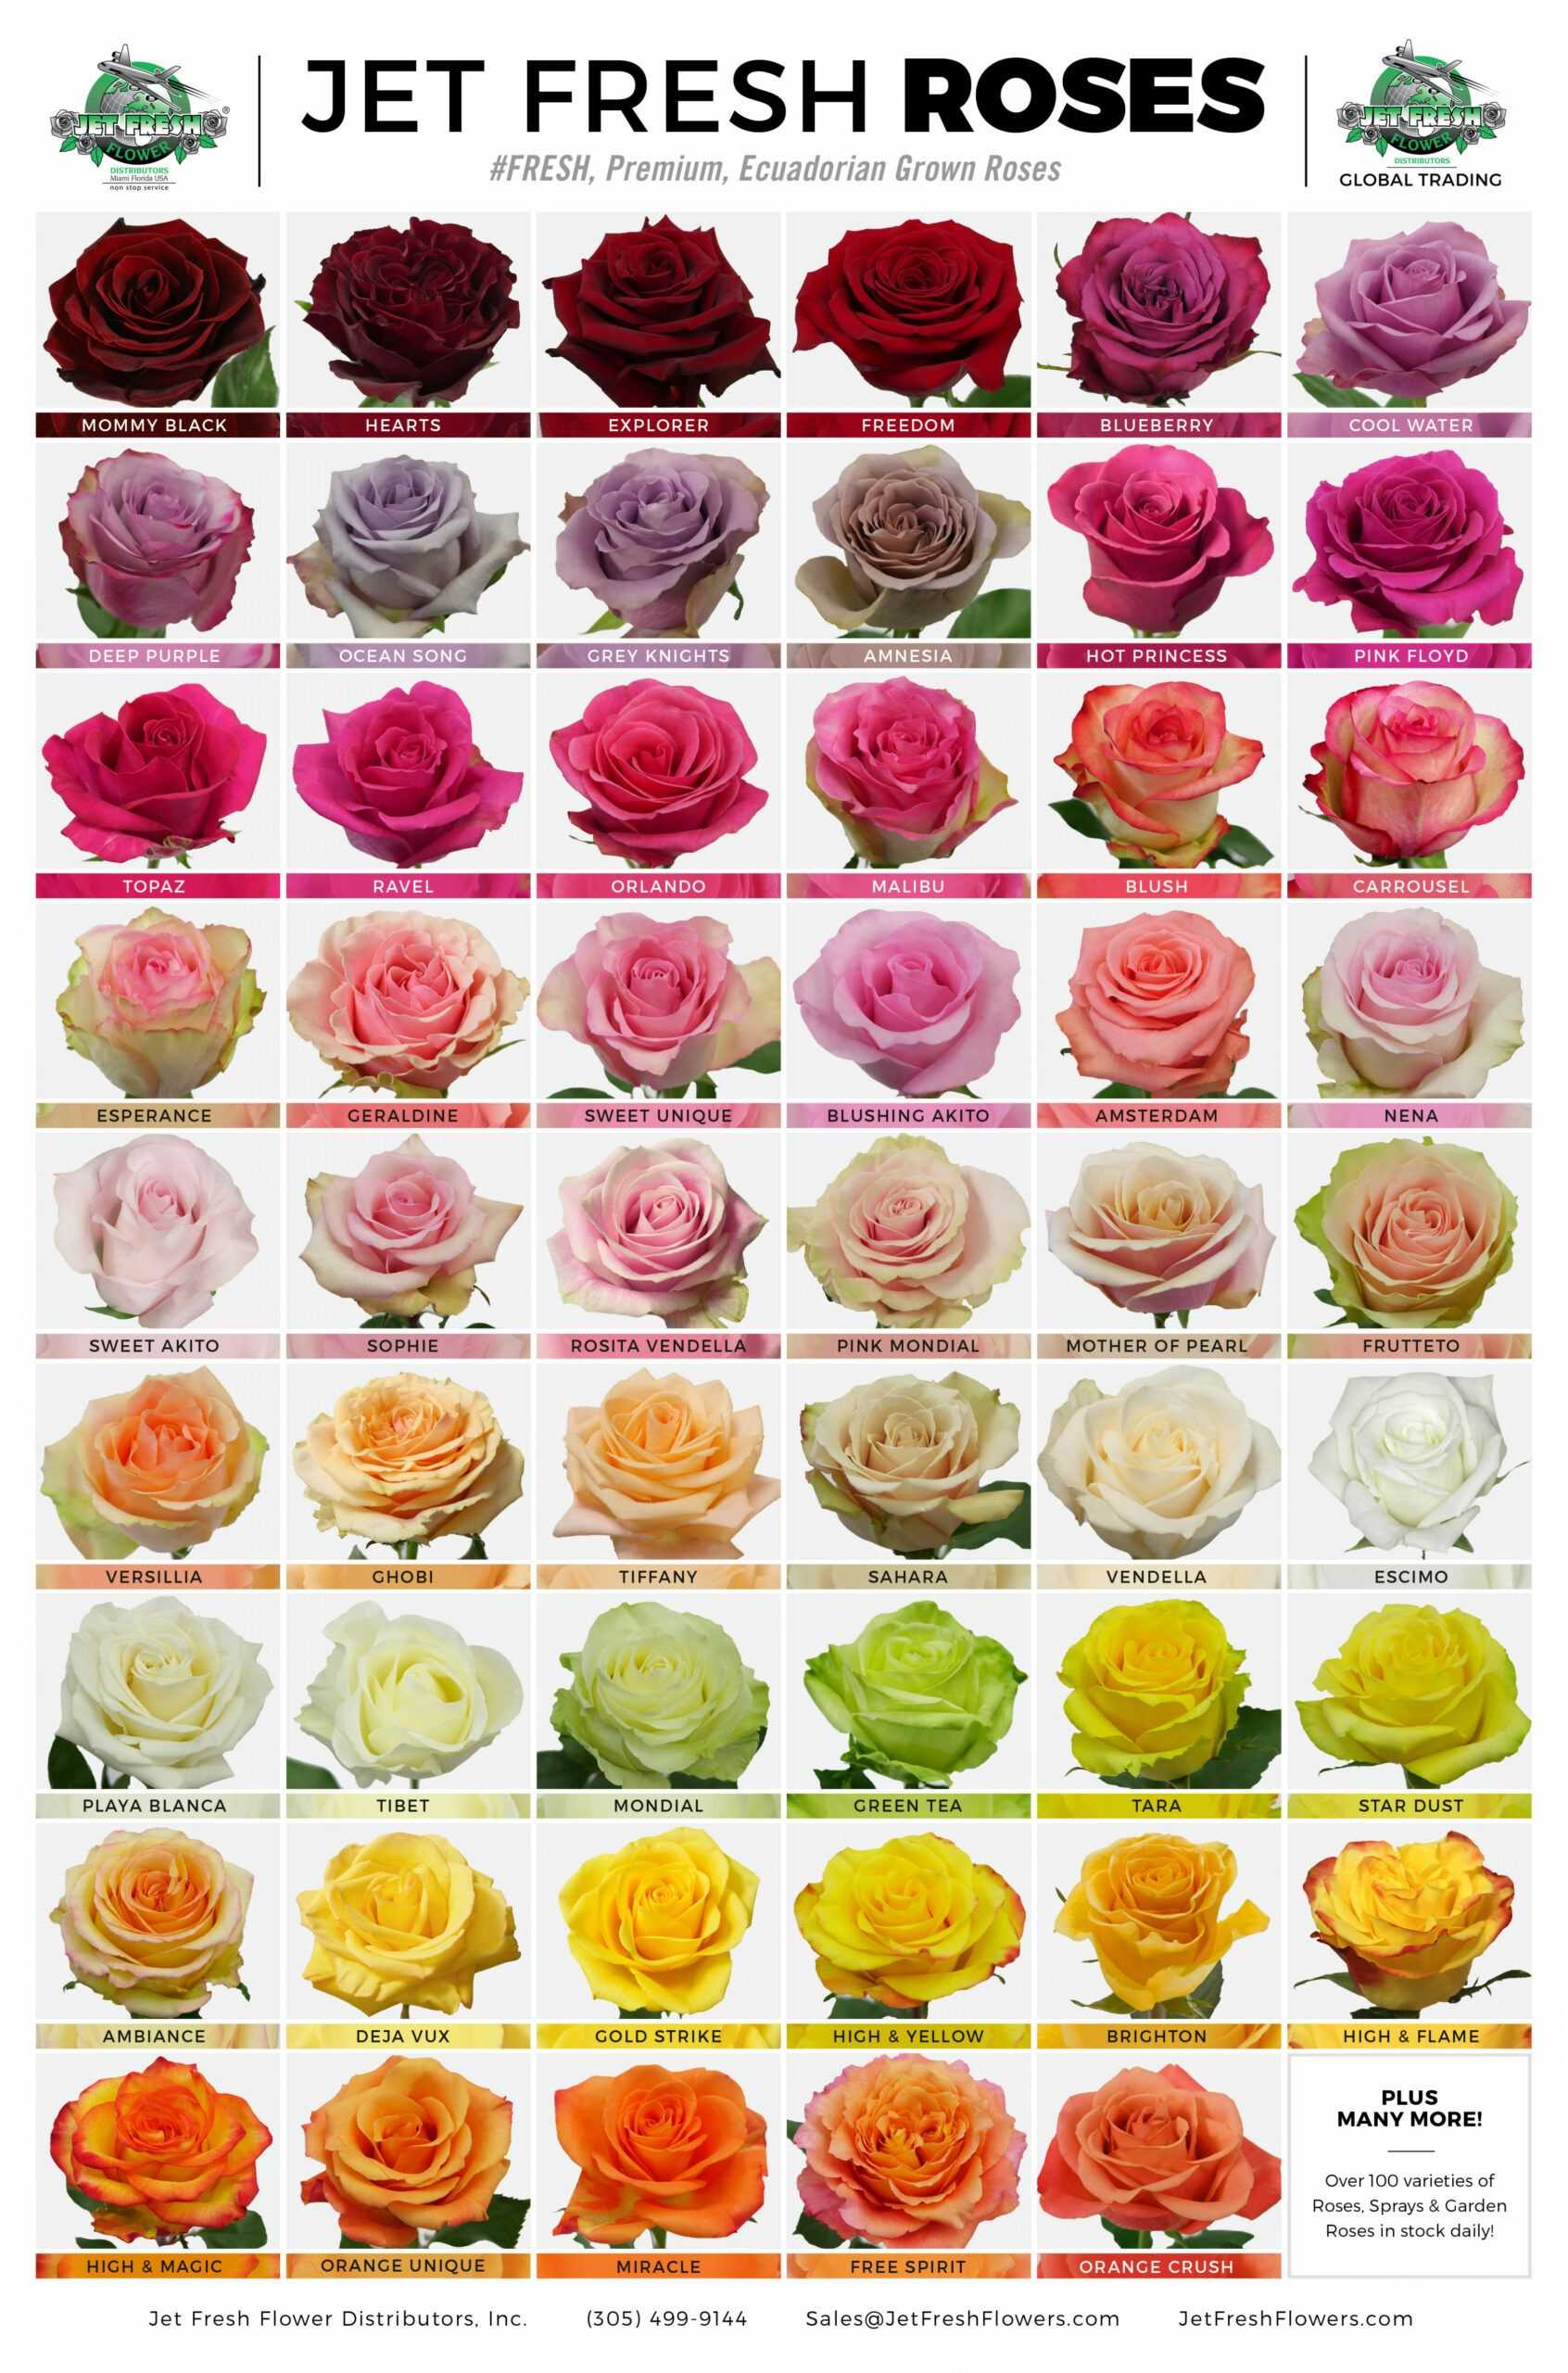 лучшие сорта роз фото и описание